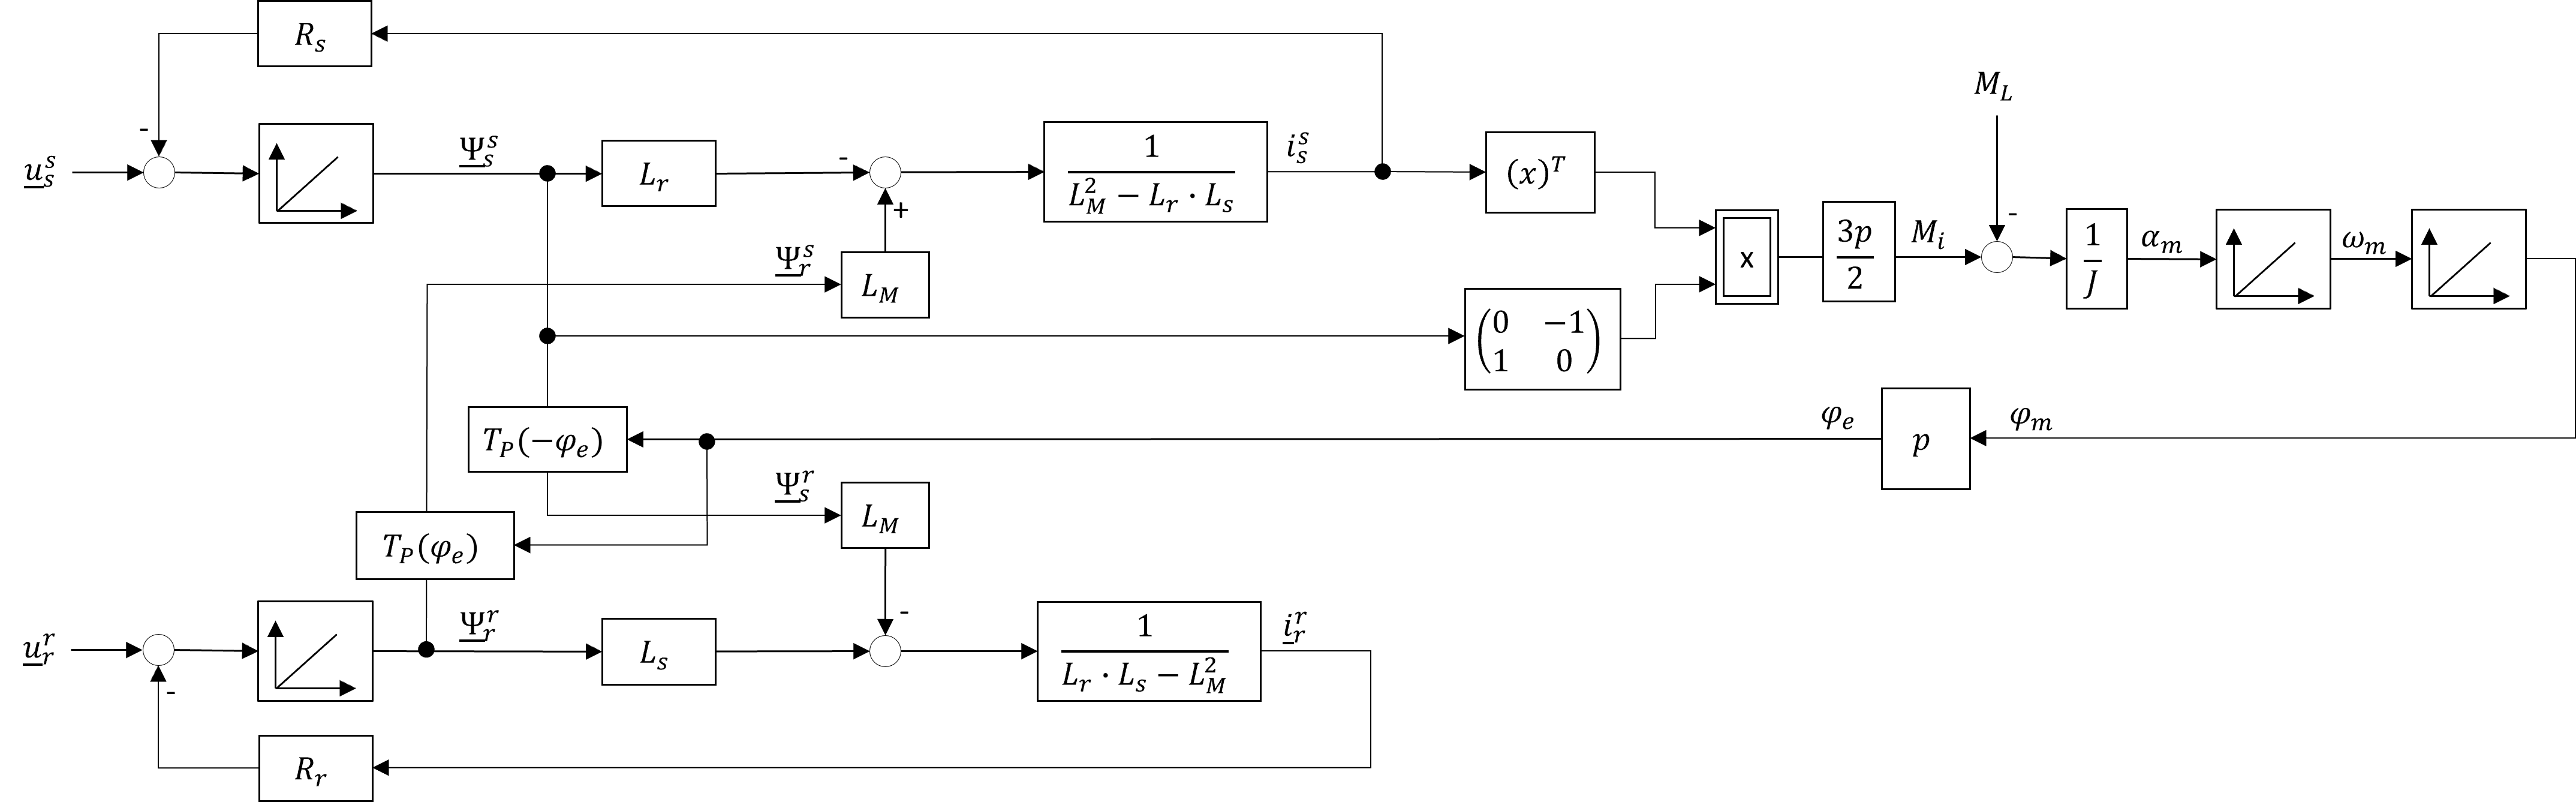 Blockschaltbild der allgemeinen Drehfeldmaschine in Stator und Rotorkoordinaten